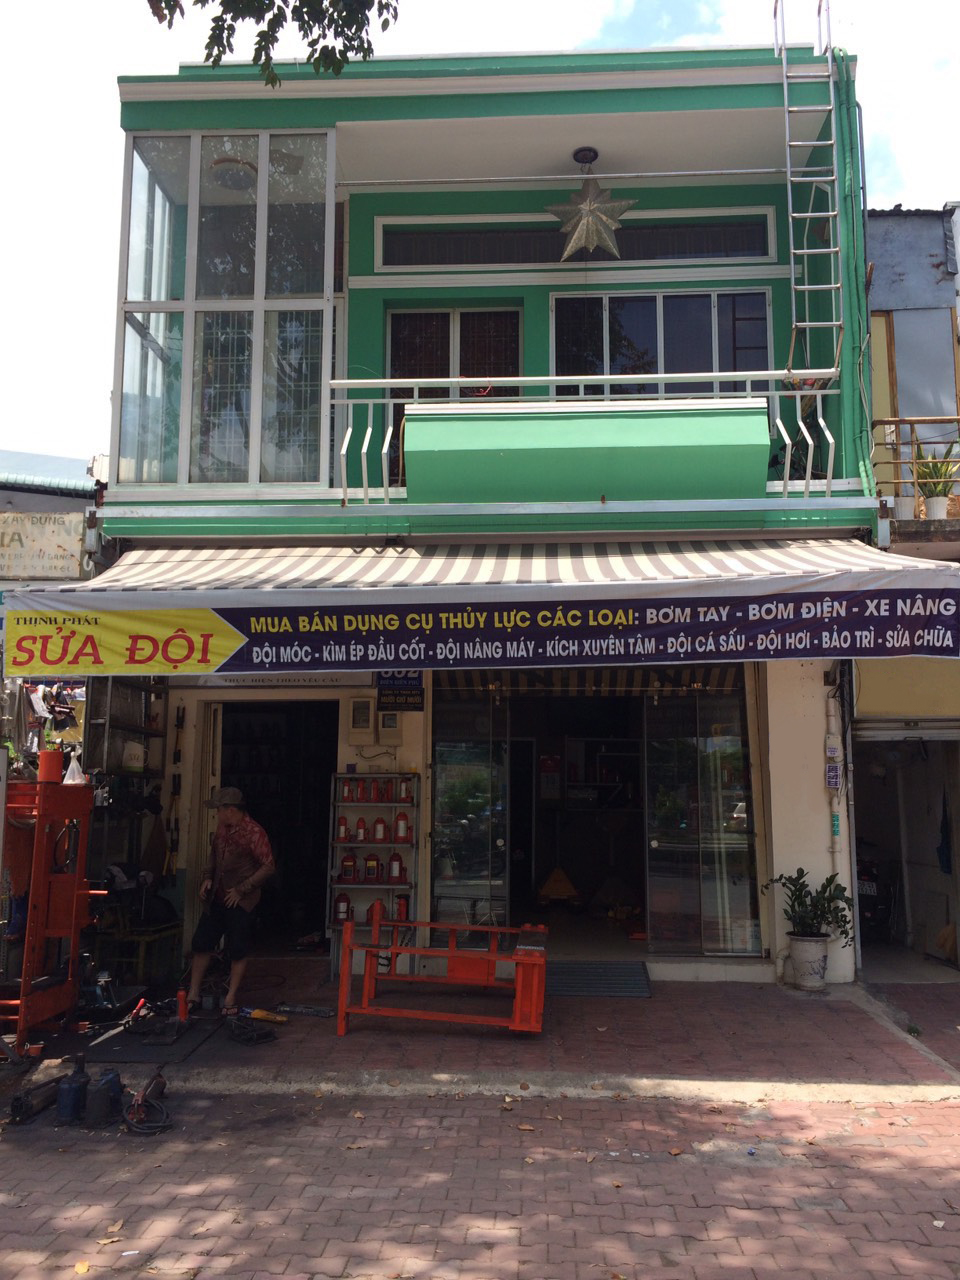 Bán nhà mặt tiền đường Điện Biên Phủ phường 17 quận Bình Thạnh